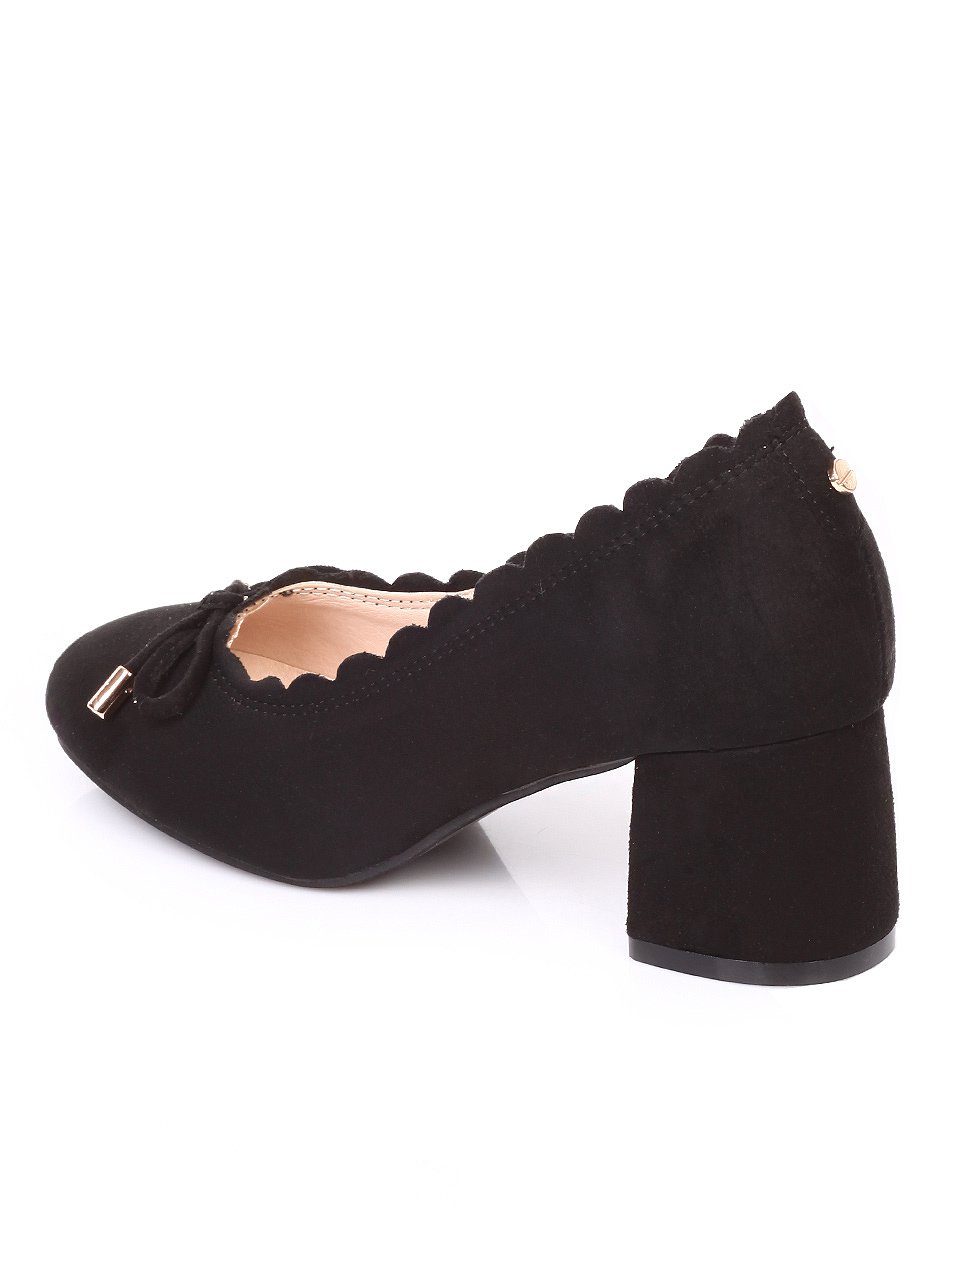 Ежедневни дамски обувки на ток в черно 3C-18220 black